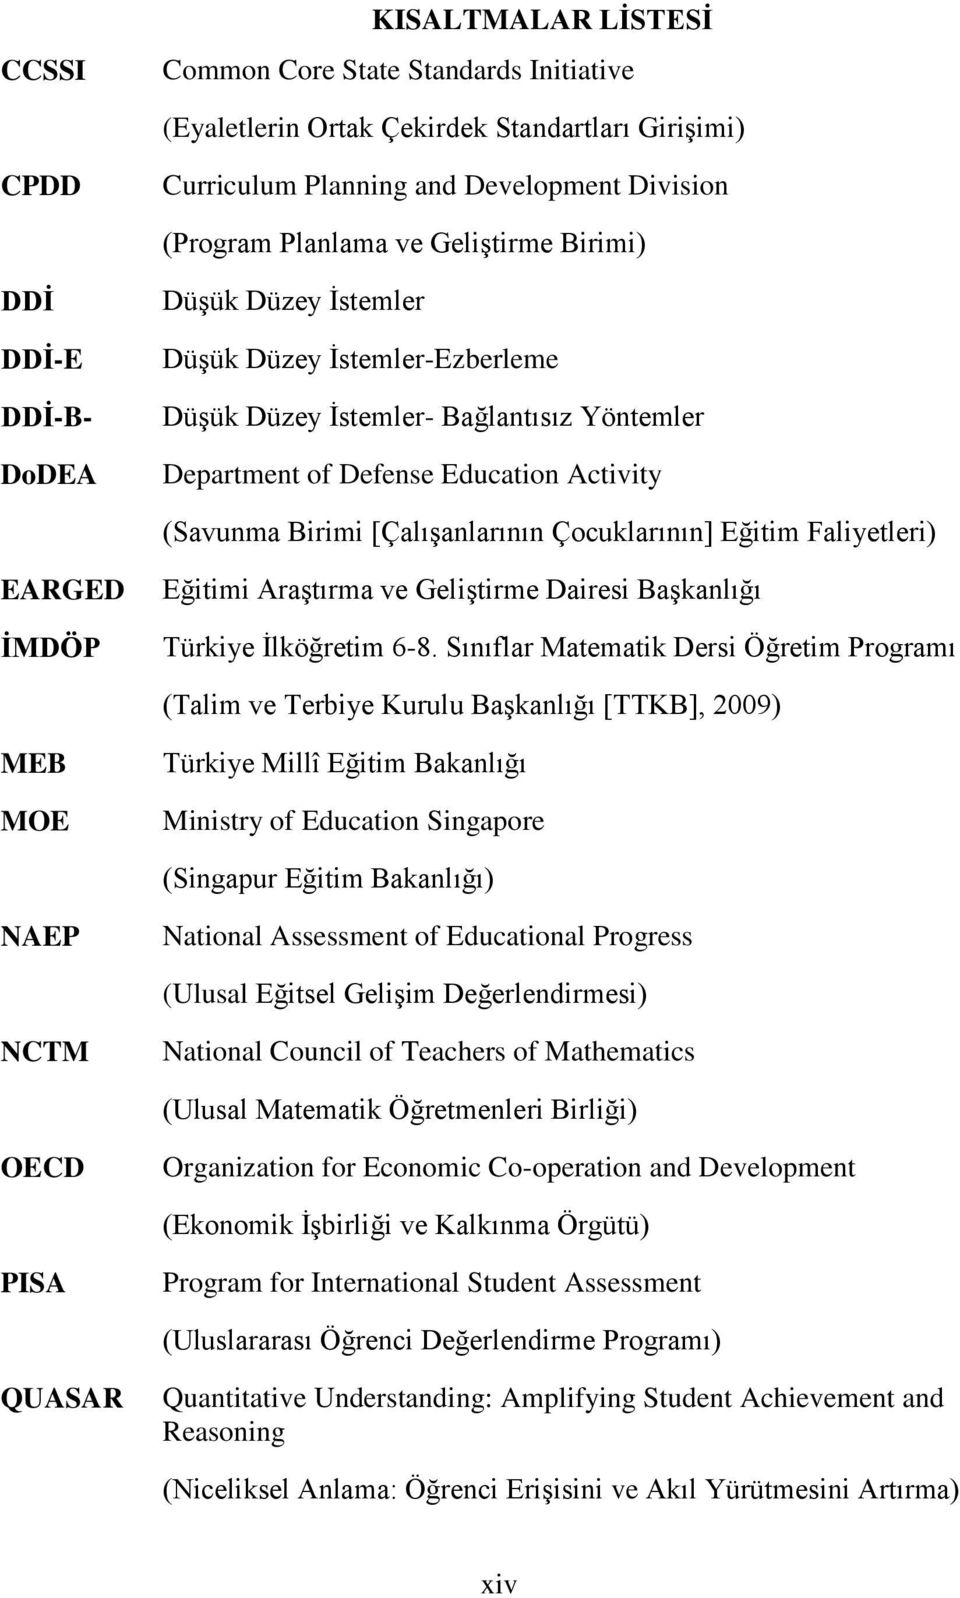 Çocuklarının] Eğitim Faliyetleri) EARGED İMDÖP Eğitimi Araştırma ve Geliştirme Dairesi Başkanlığı Türkiye İlköğretim 6-8.